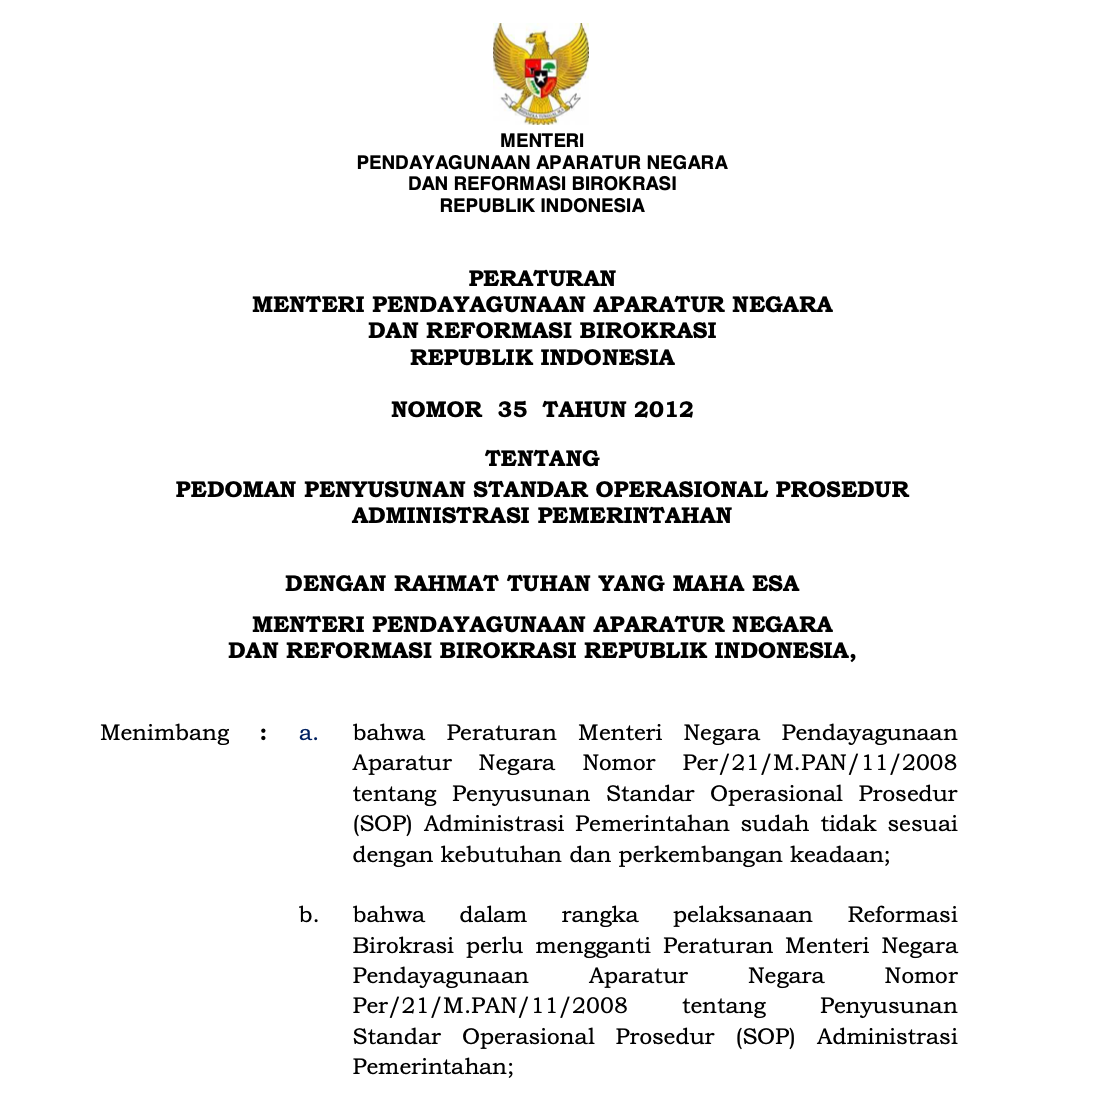 Peraturan Menteri Pendayagunaan Aparatur Negara dan Reformasi Birokrasi Republik Indonesia Nomor 35 Tahun 2012